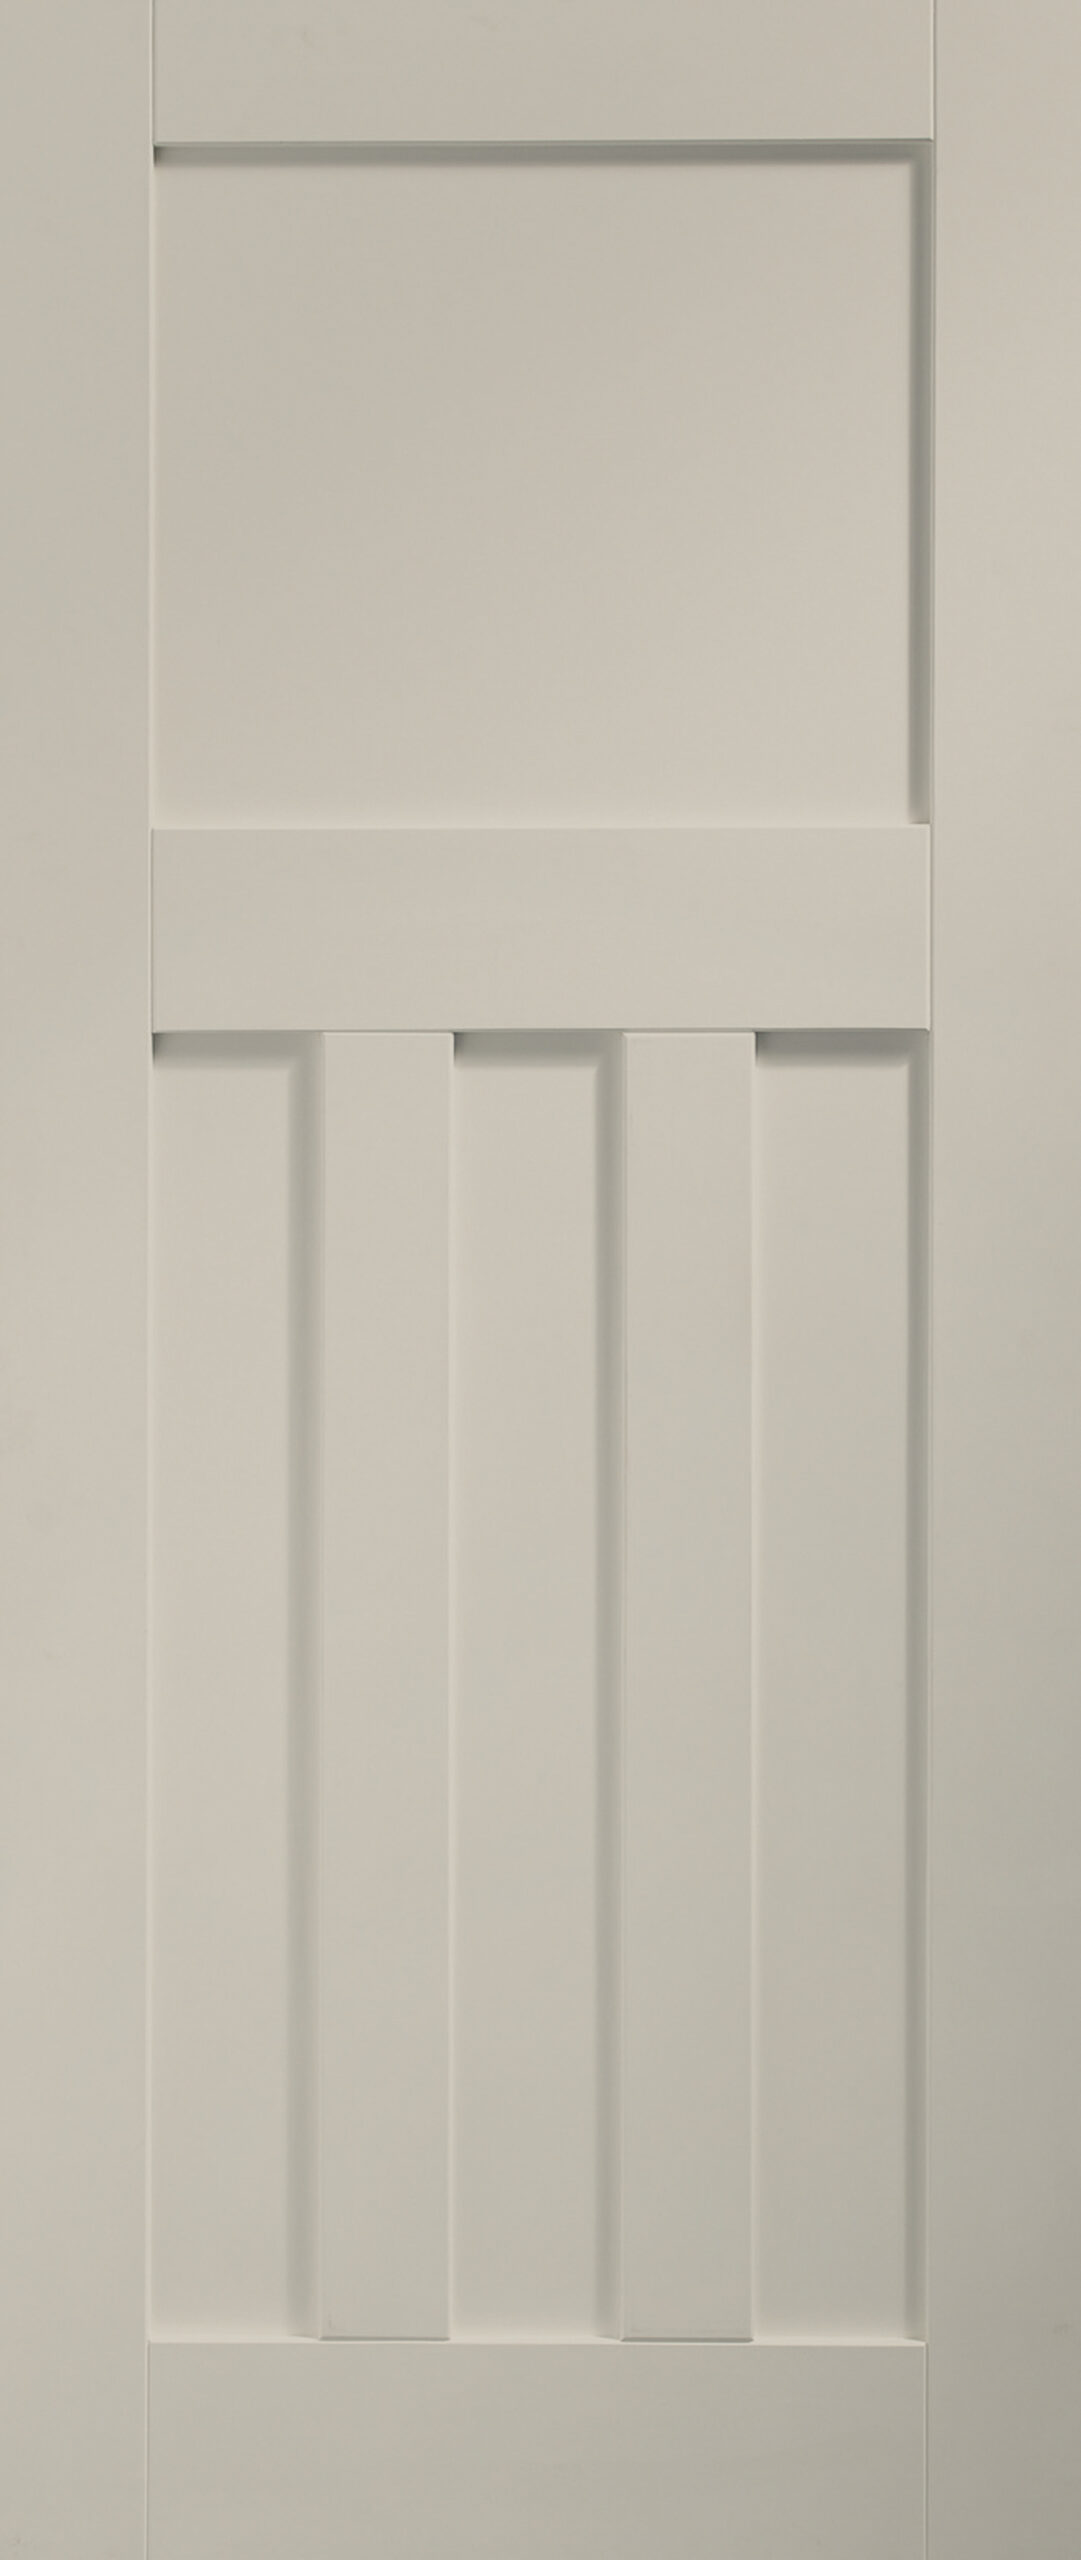 Internal White Primed DX Door Fire Door – 1981 x 838 x 44 mm, Isabella